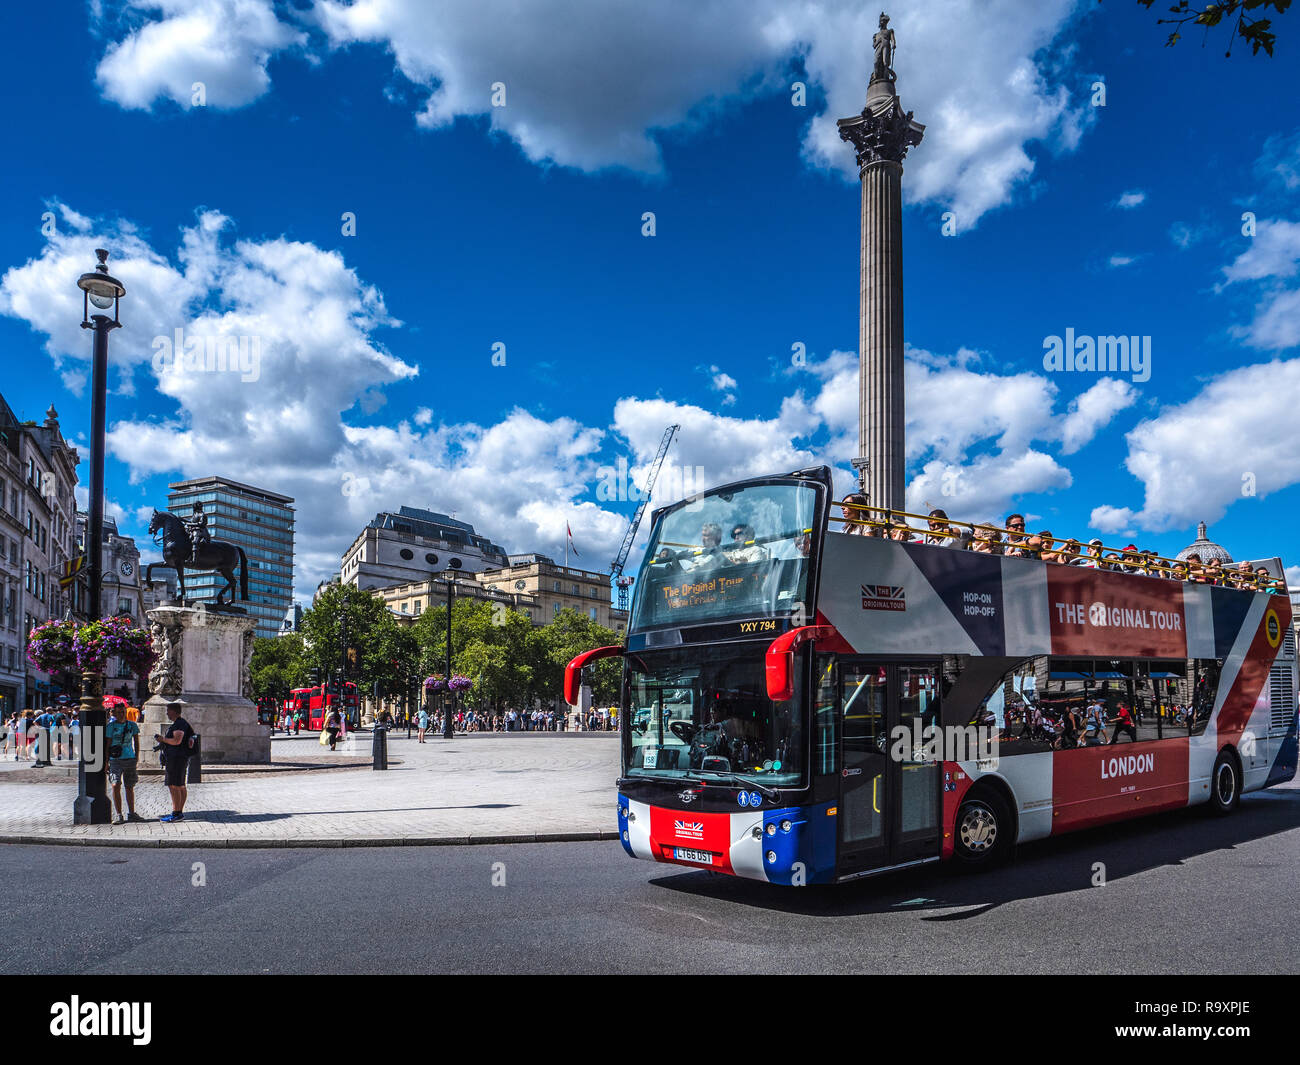 Tourisme à Londres - Bus touristique près de Trafalgar Square, au centre de Londres Banque D'Images